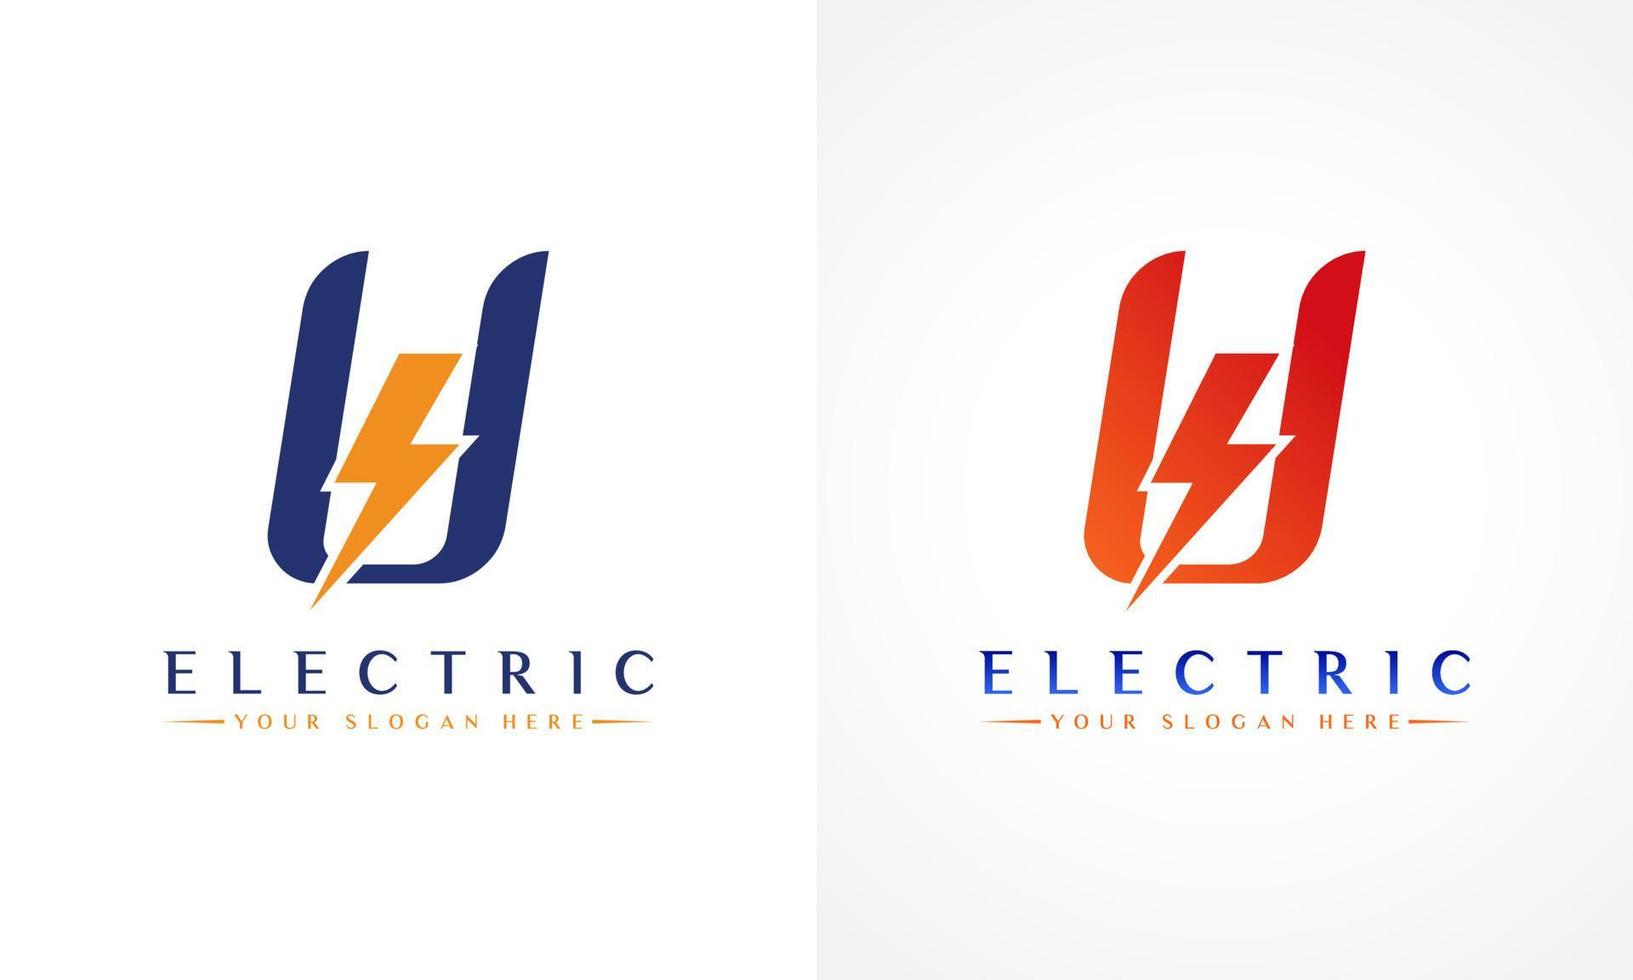 U Letter Logo With Lightning Thunder Bolt Vector Design. Electric Bolt Letter U Logo Vector Illustration.